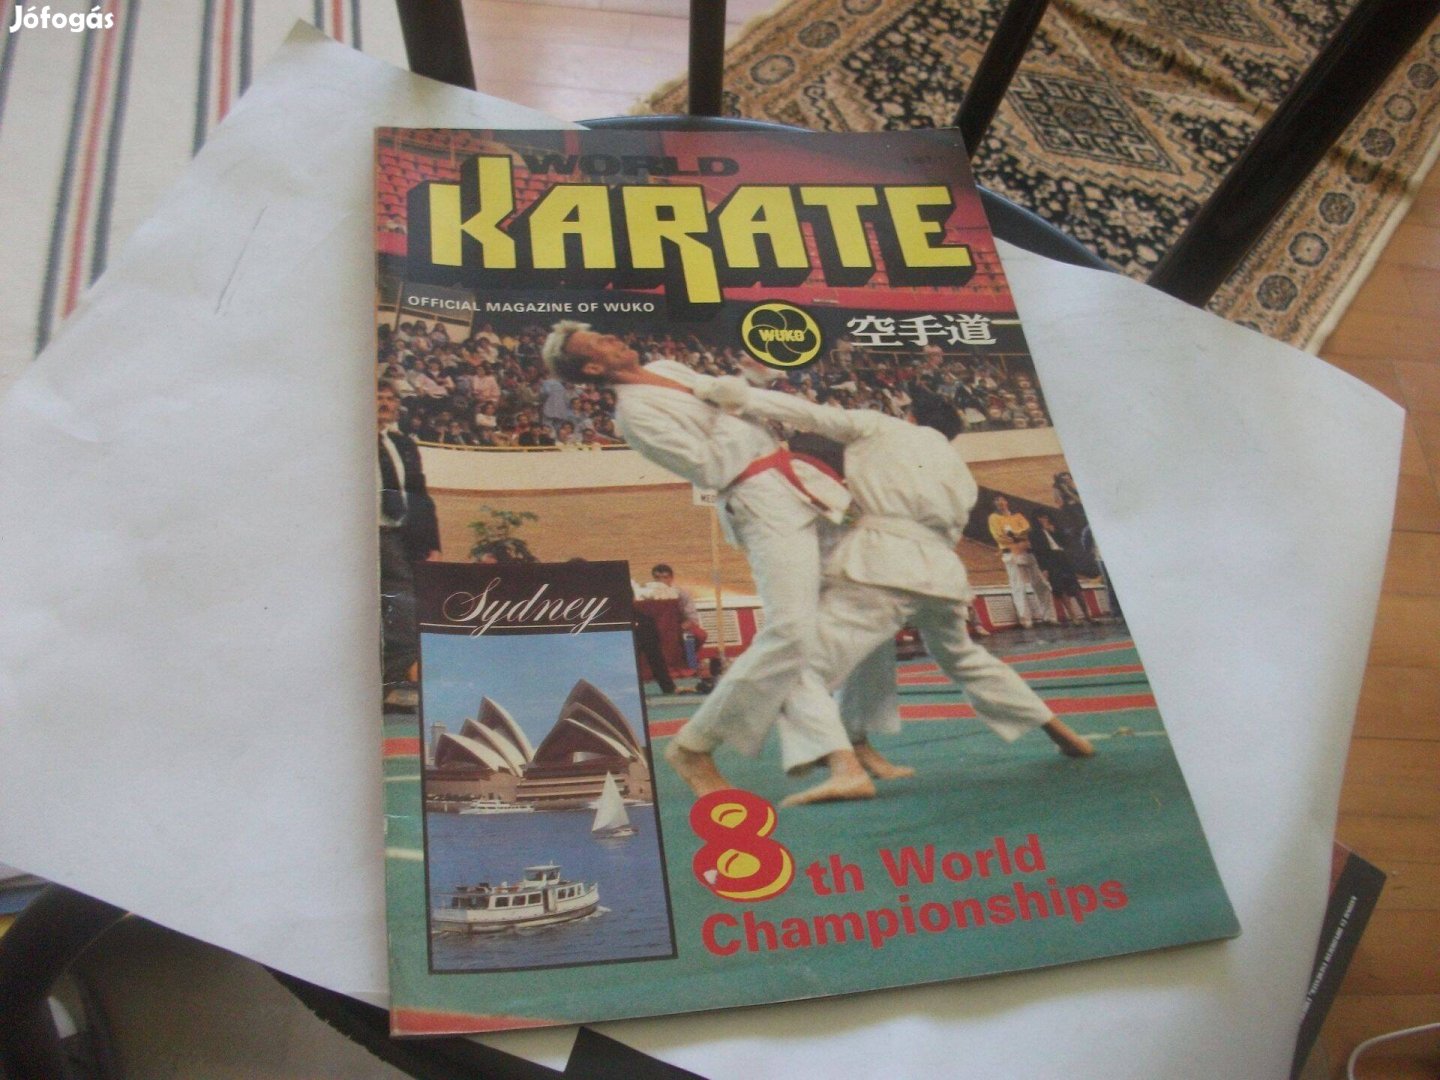 World Karate 1987/1 - angol nyelvű magyar kiadású magazin - ritka!